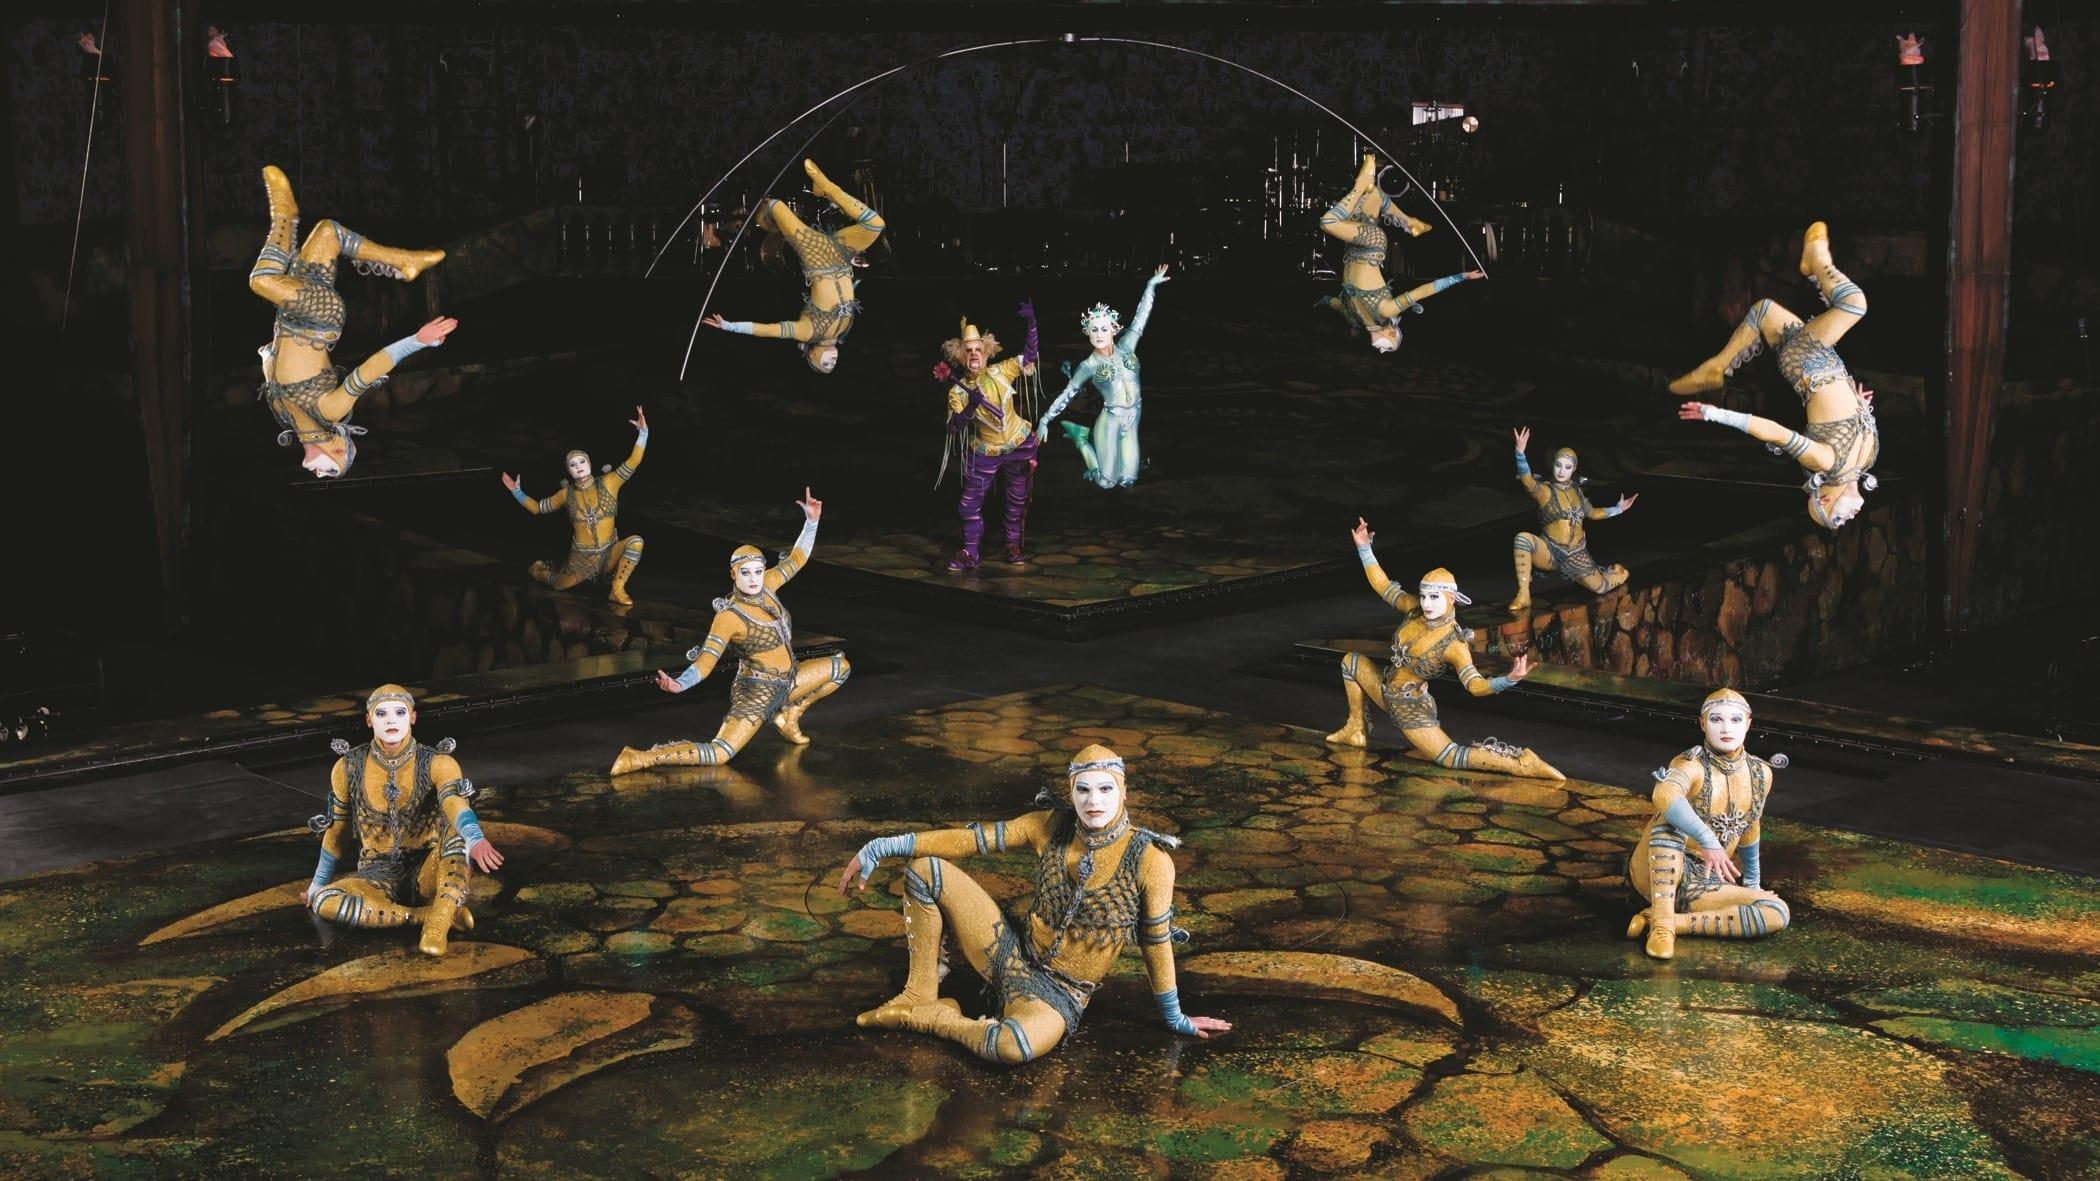 Cirque du Soleil: Alegria backdrop